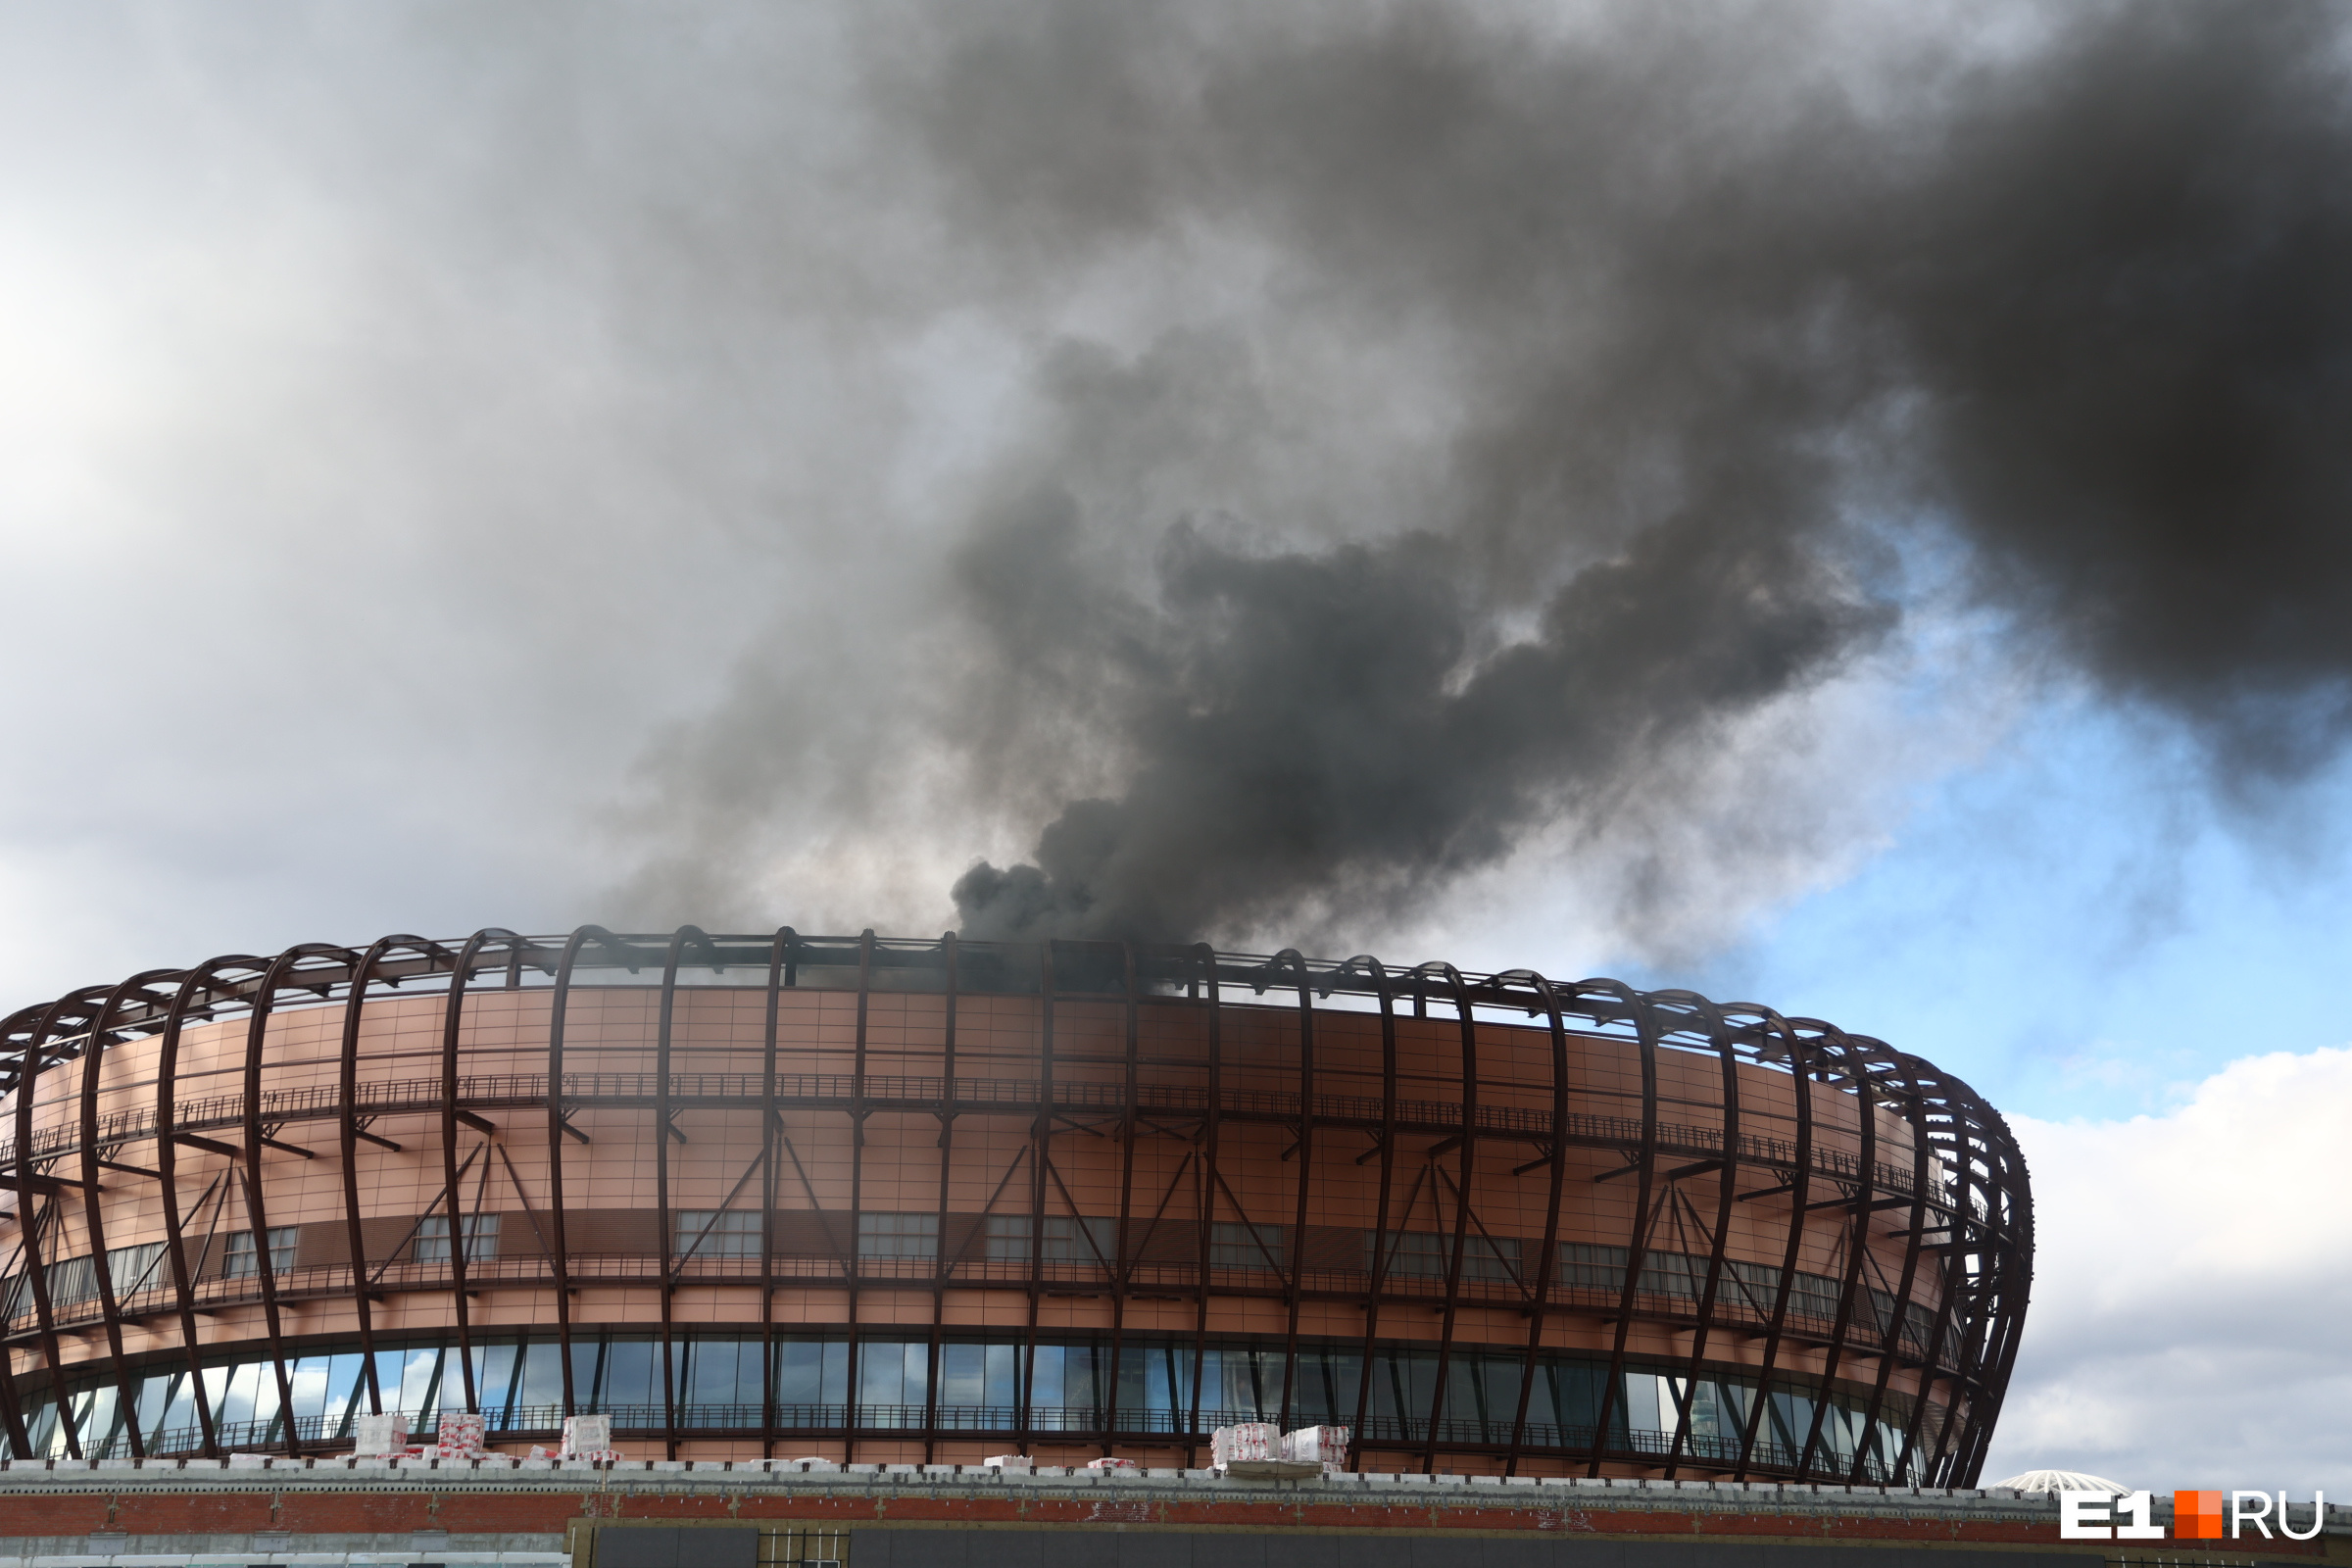 Виден открытый огонь! Из ледовой арены УГМК валит черный-черный дым. Онлайн